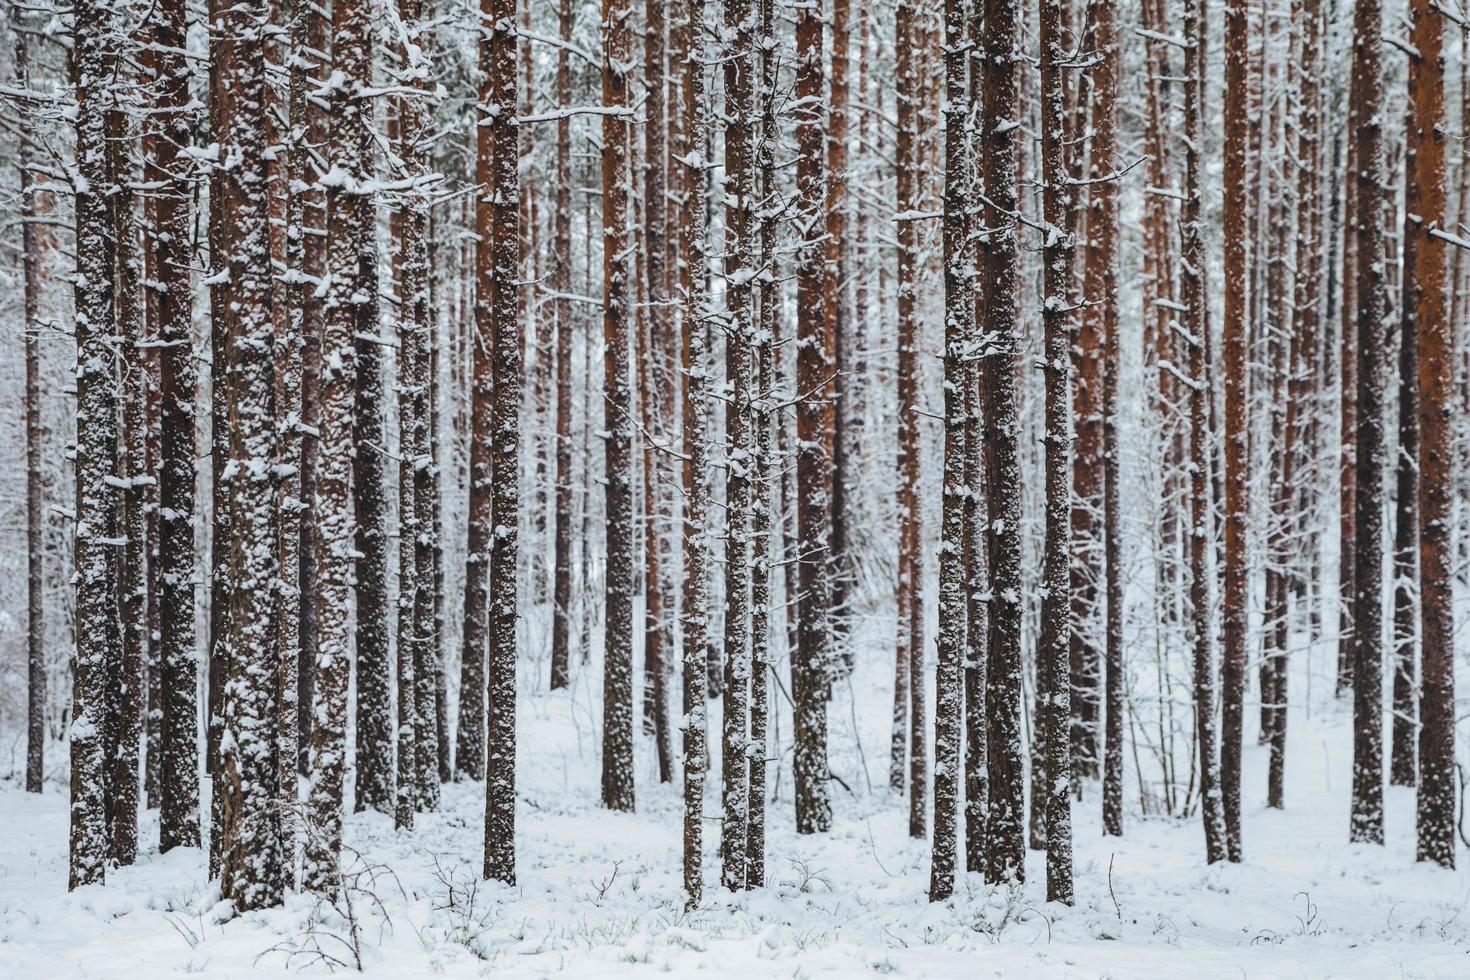 belle forêt d'hiver. troncs d'arbres couverts de neige. paysage d'hiver. des neiges blanches recouvrent le sol et les arbres. ambiance majestueuse. caractère neigeux. tir en plein air photo